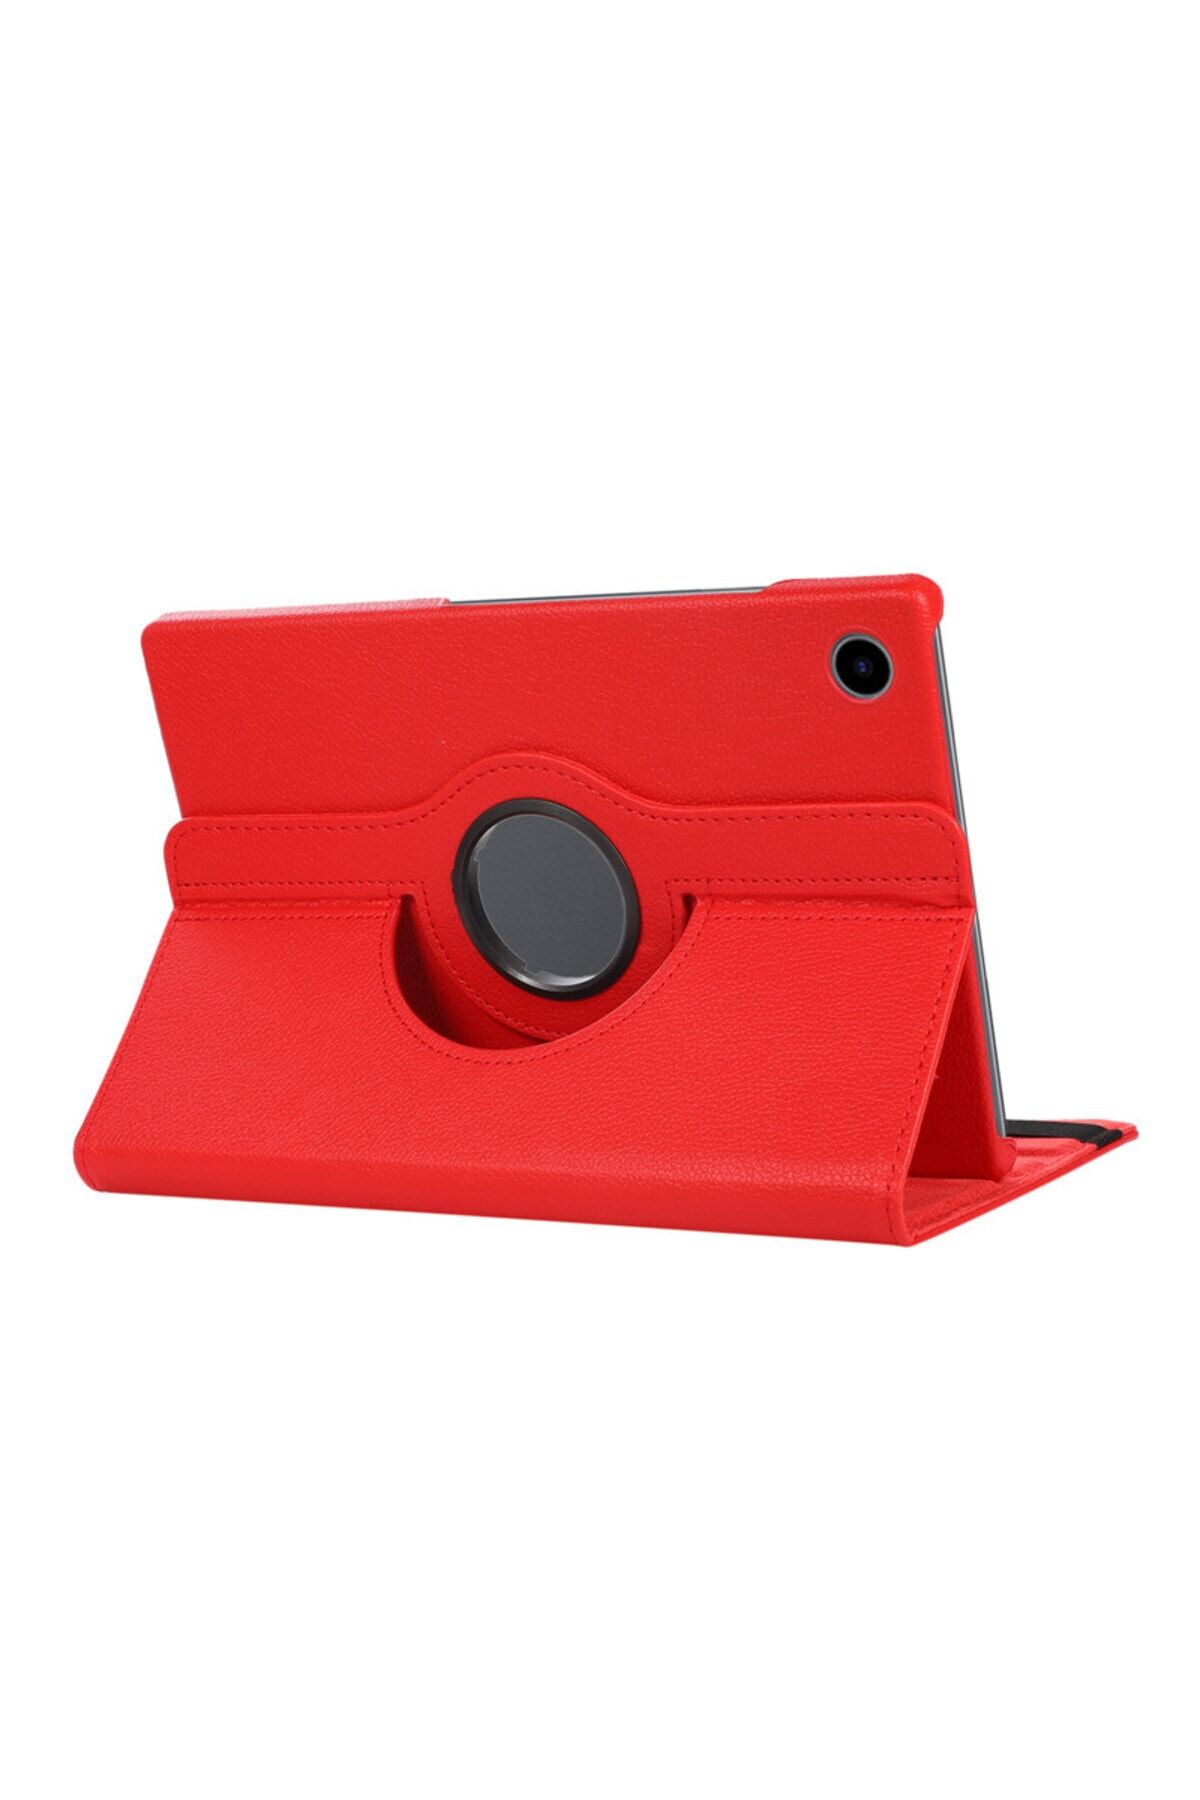 UnDePlus Honor Pad X8 10.1 Inç Kılıf 360 Dönebilen Standlı Case Kırmızı (PAD 8 12İNÇ DEĞİLDİR)